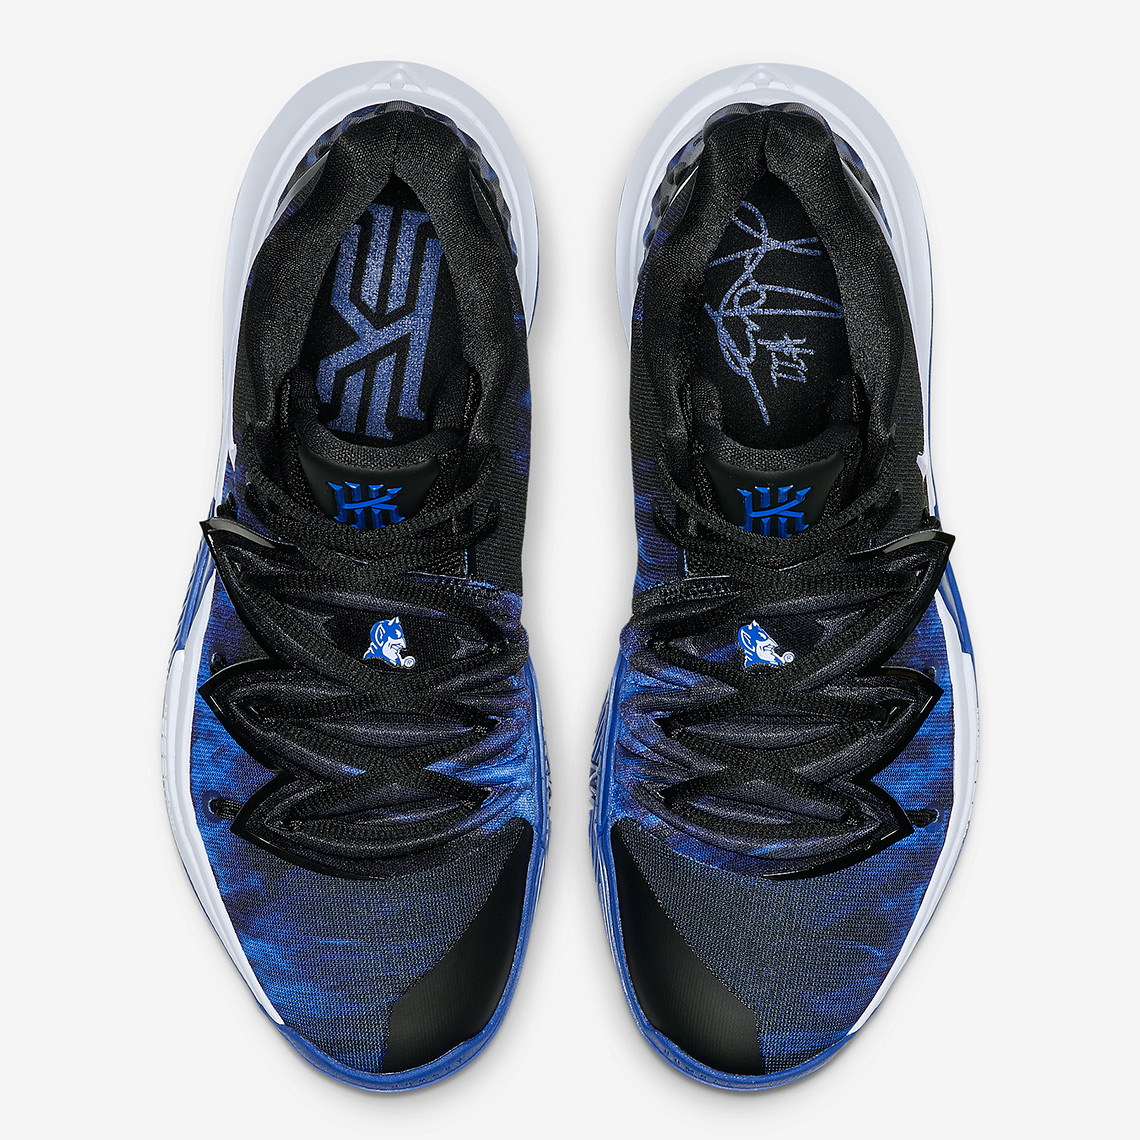 Bandulu X Nike Kyrie 5 Irving 5 Graffiti Joint Basketball Shoes